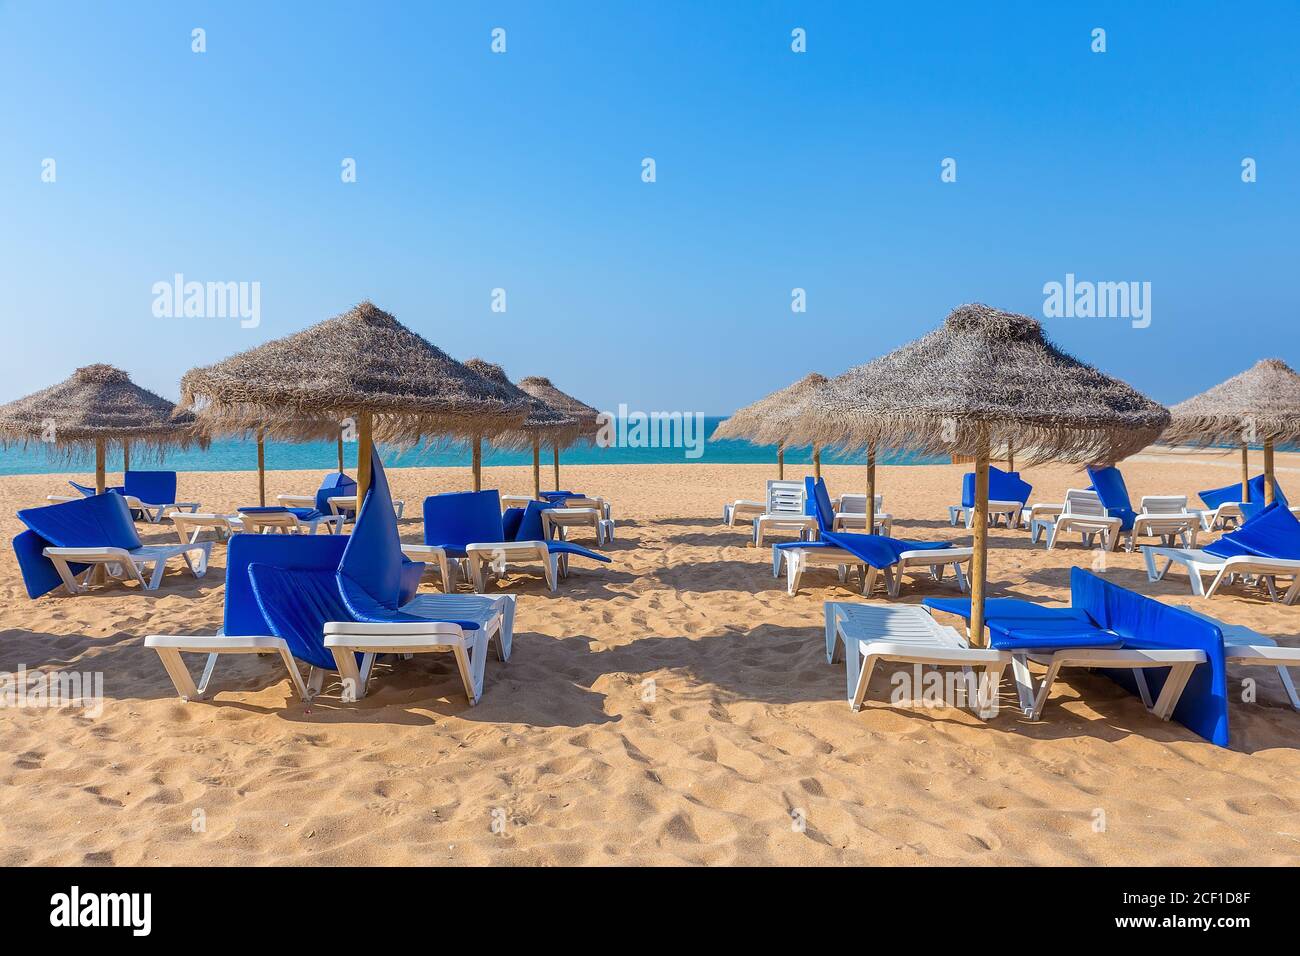 Grupos de mimbre sombrillas de playa y camas de playa azul en portugués costa Foto de stock